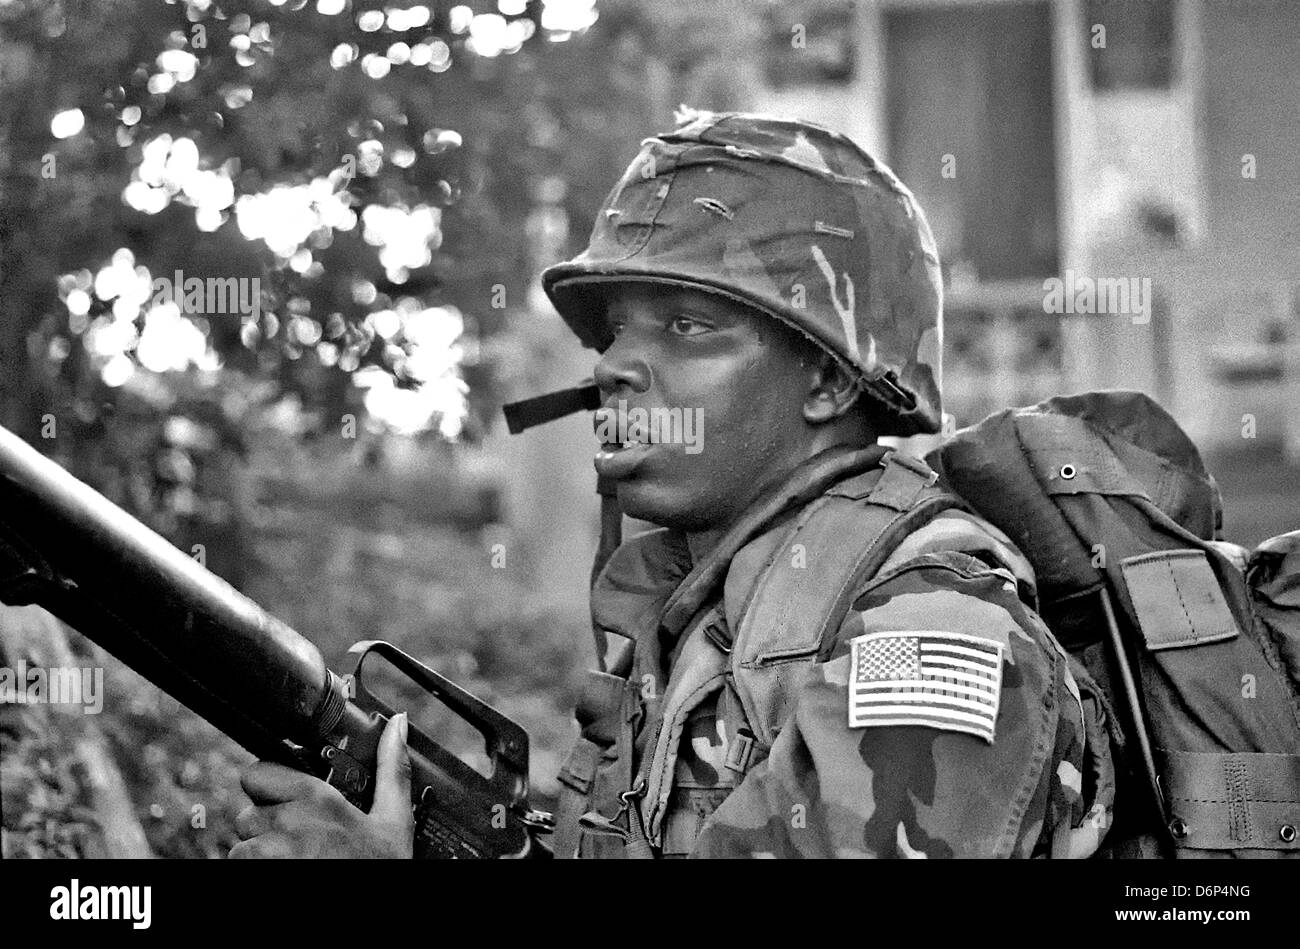 Ein US-Marine bewaffnet mit M16A1 Gewehr Patrouillen die Gegend um Grenville während der Invasion von Grenada, unter dem Codenamen Operation Urgent Fury 25. Oktober 1983 in Grenville, Grenada. Die Invasion begann am 25. Oktober 1983 und wurde die erste größere militärische Aktion von den Vereinigten Staaten seit dem Ende des Vietnam-Krieges. Stockfoto